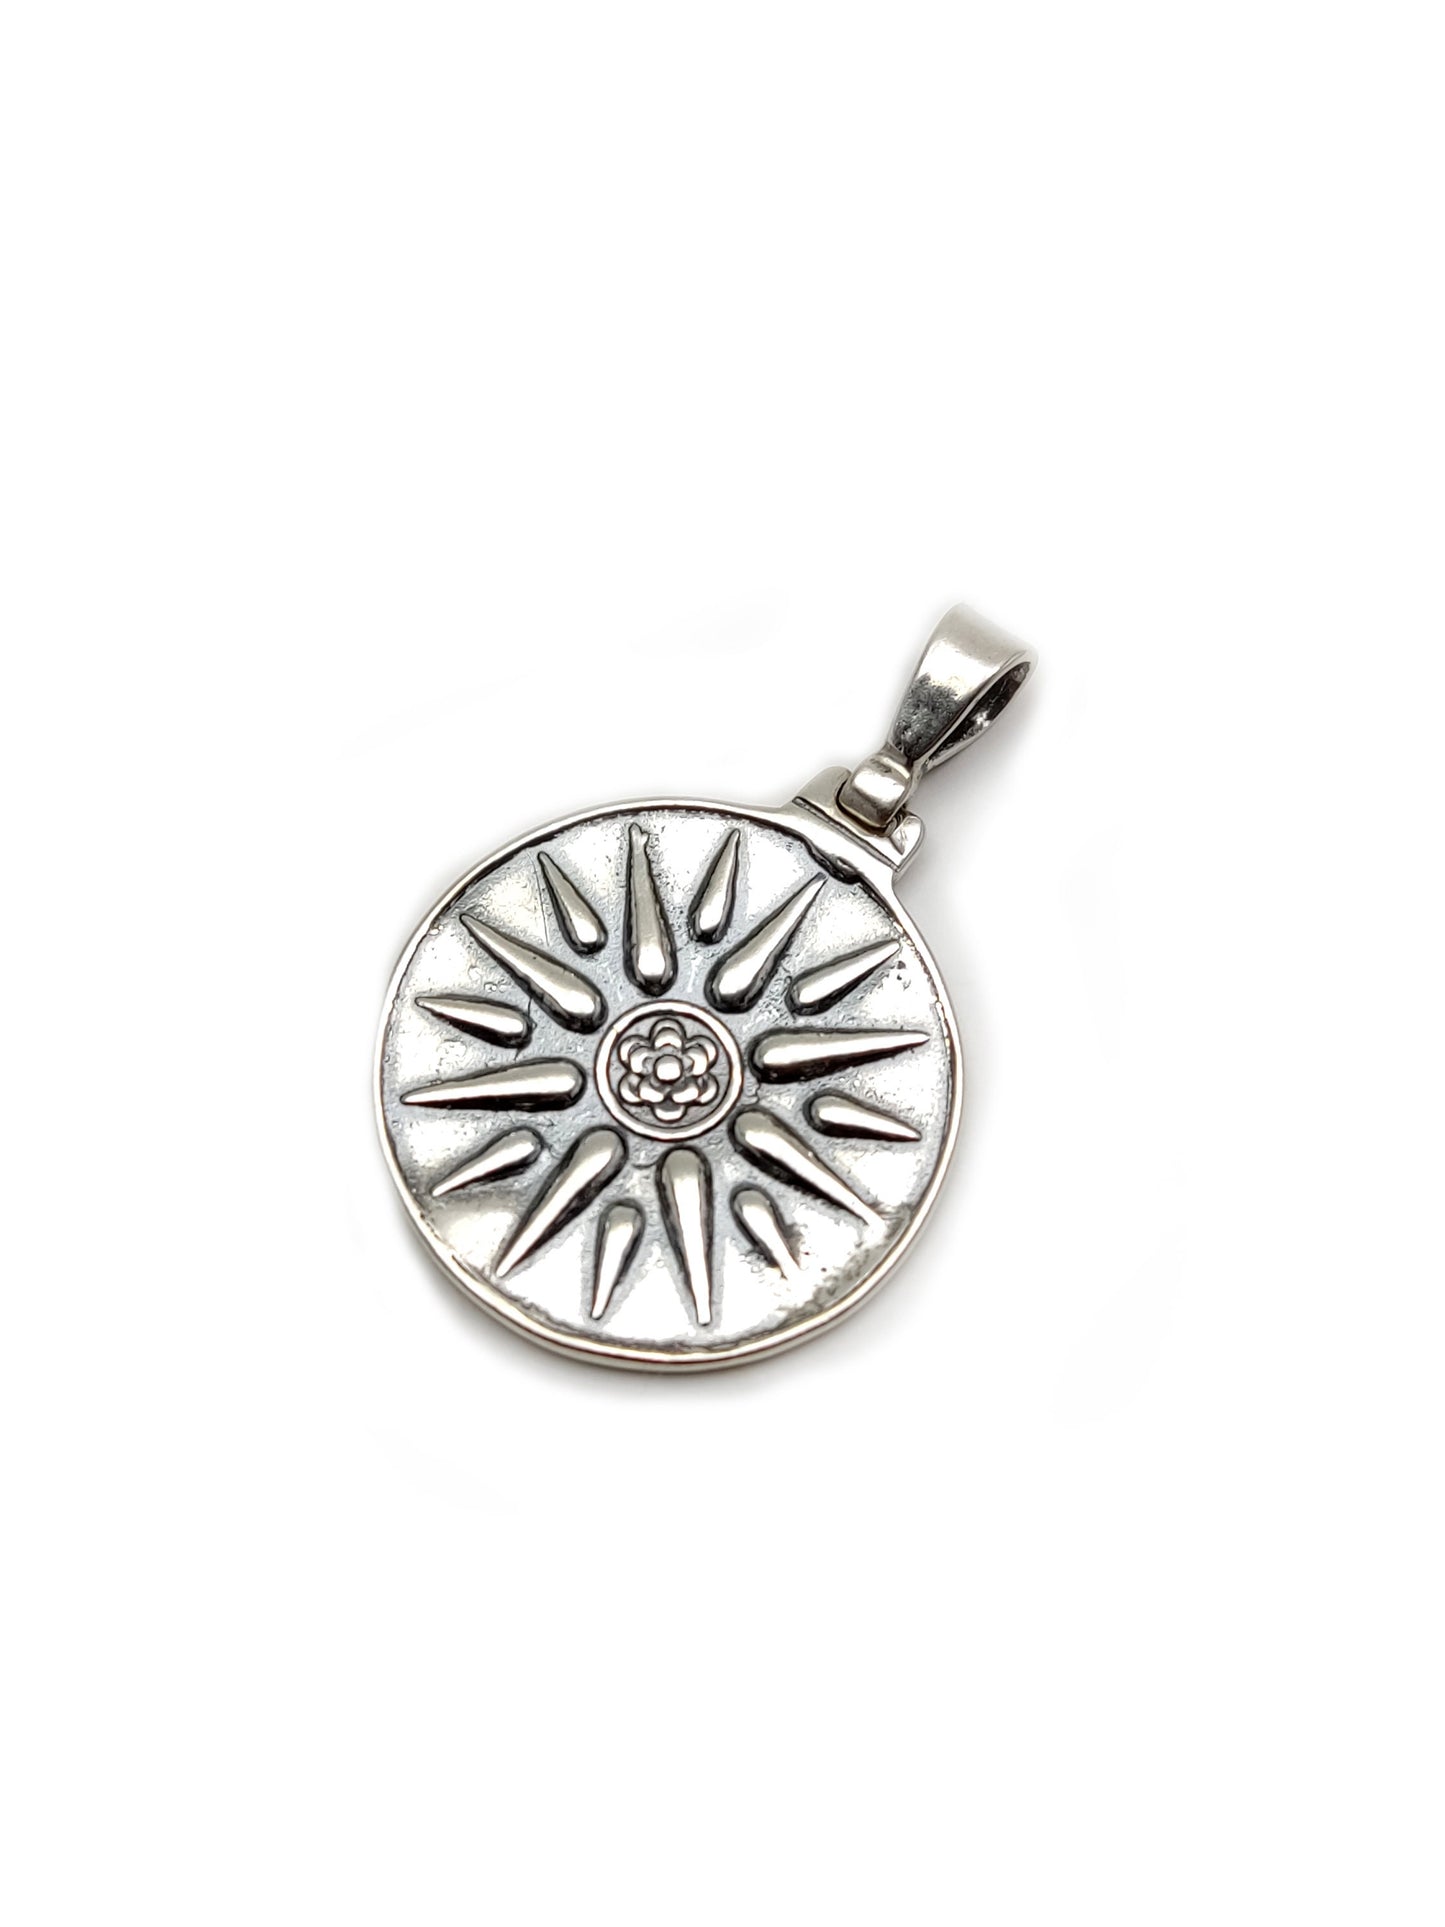 Sterling Silver 925 Greek Pendant , Vergina Greek Macedonia Sun Greek 23mm , Greek Jewelry , греческая кулон , Griechischer Anhänger